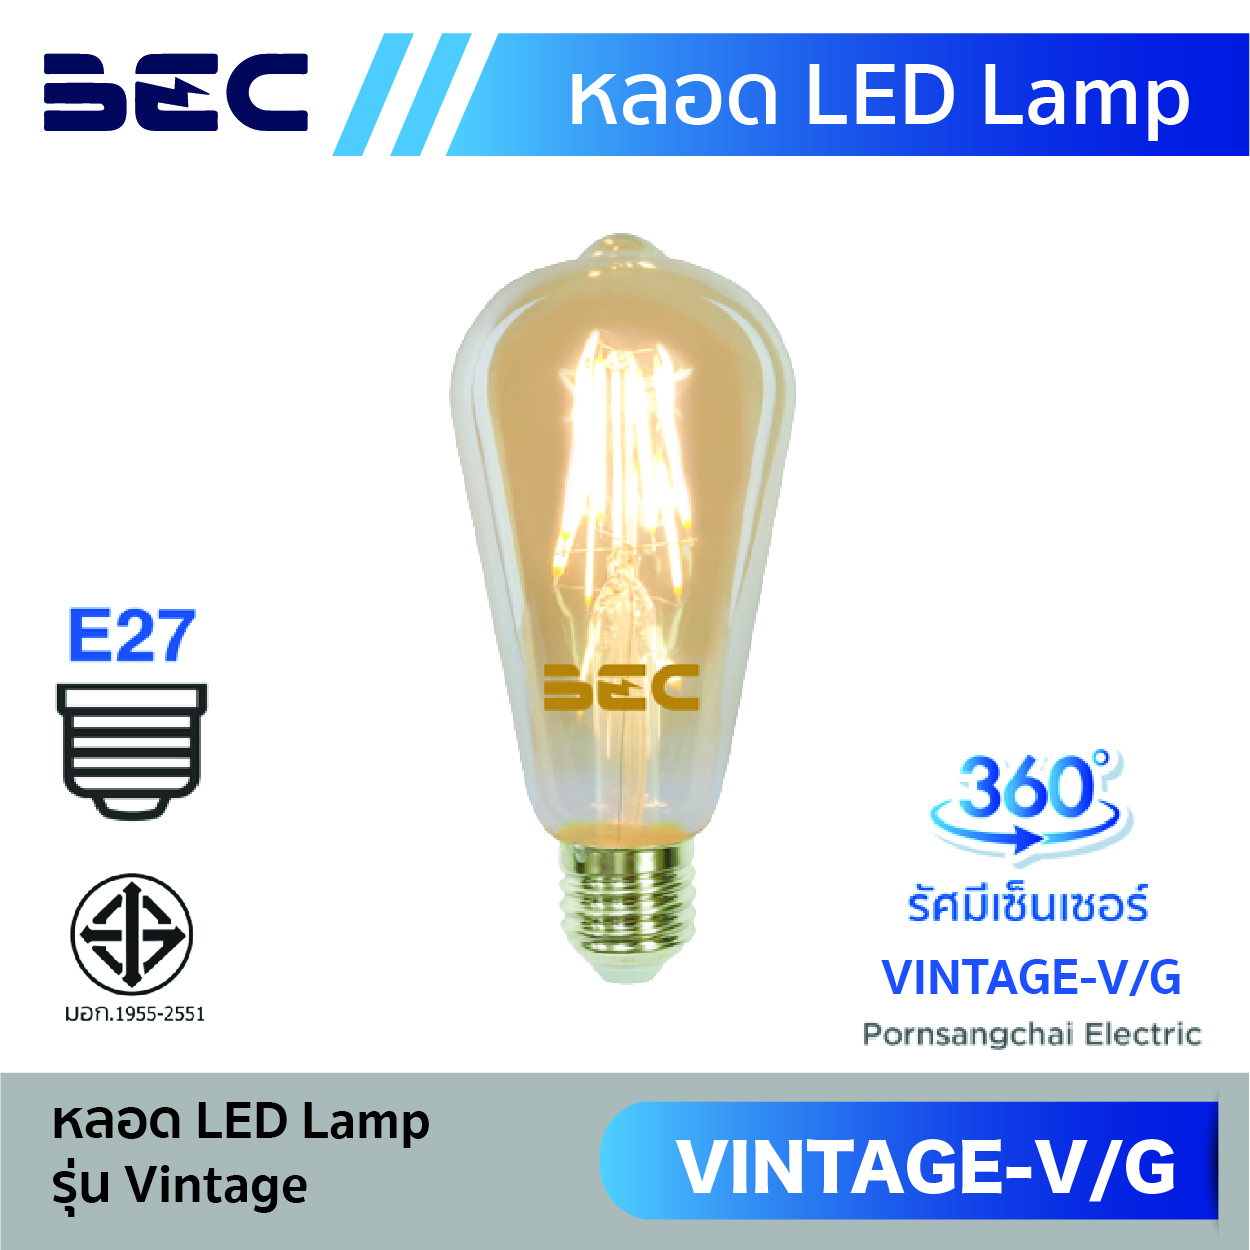 หลอดไฟ LED Lamp BEC รุ่น Vintage-V/G